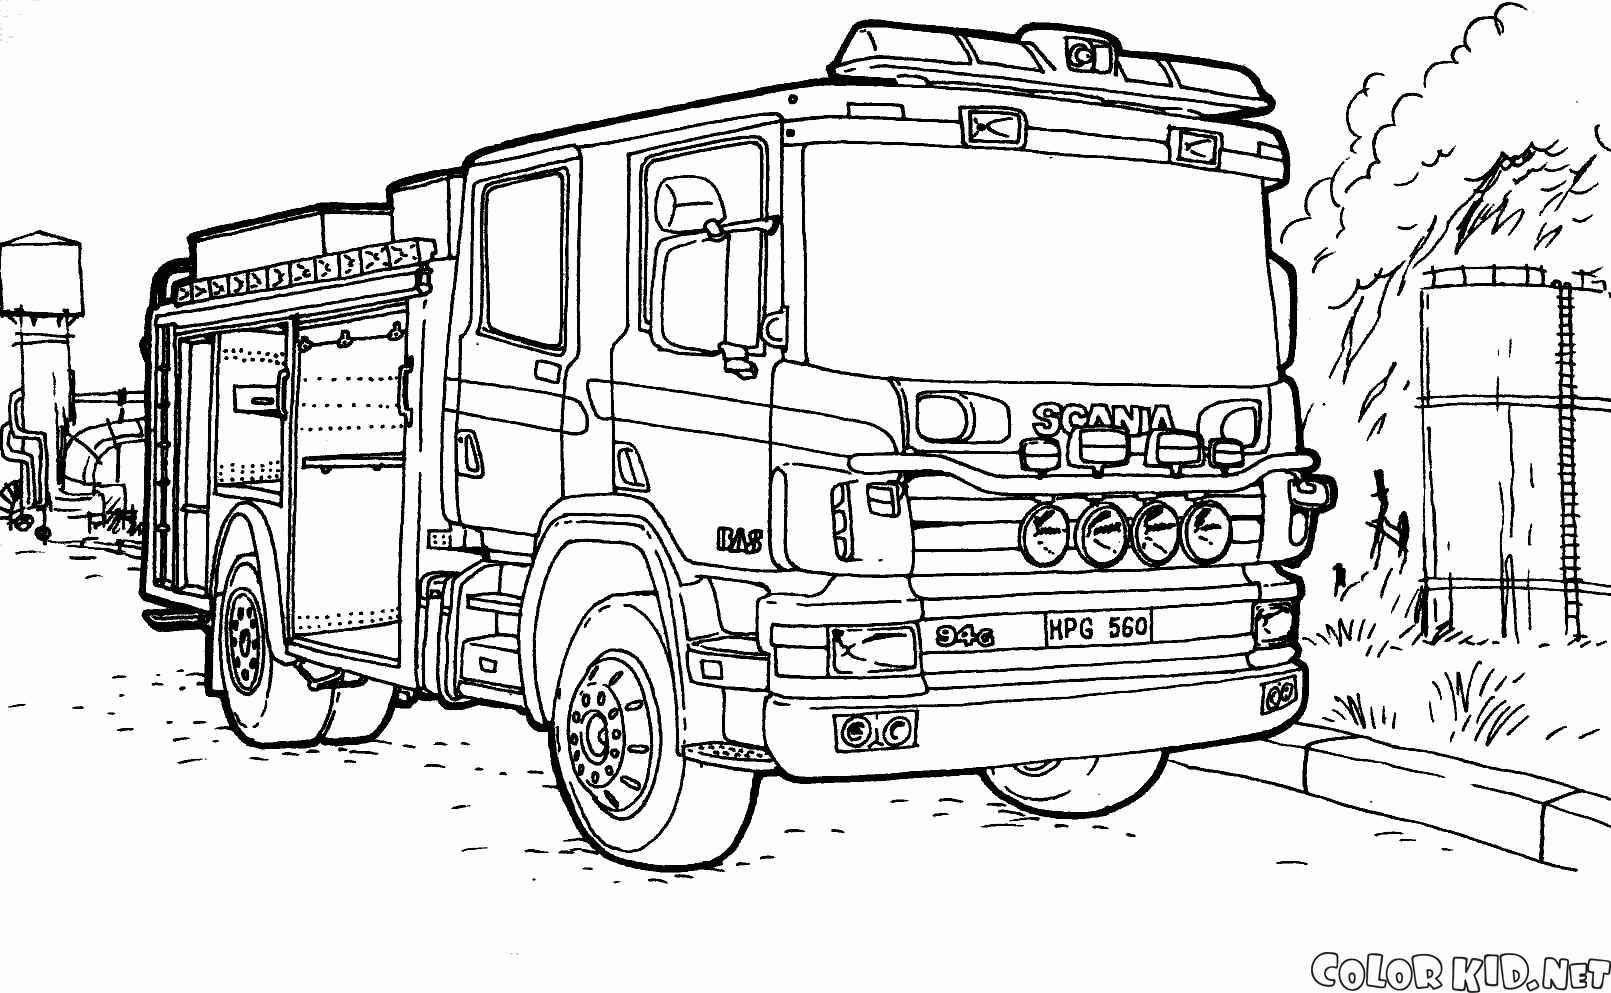 消防車スカニア